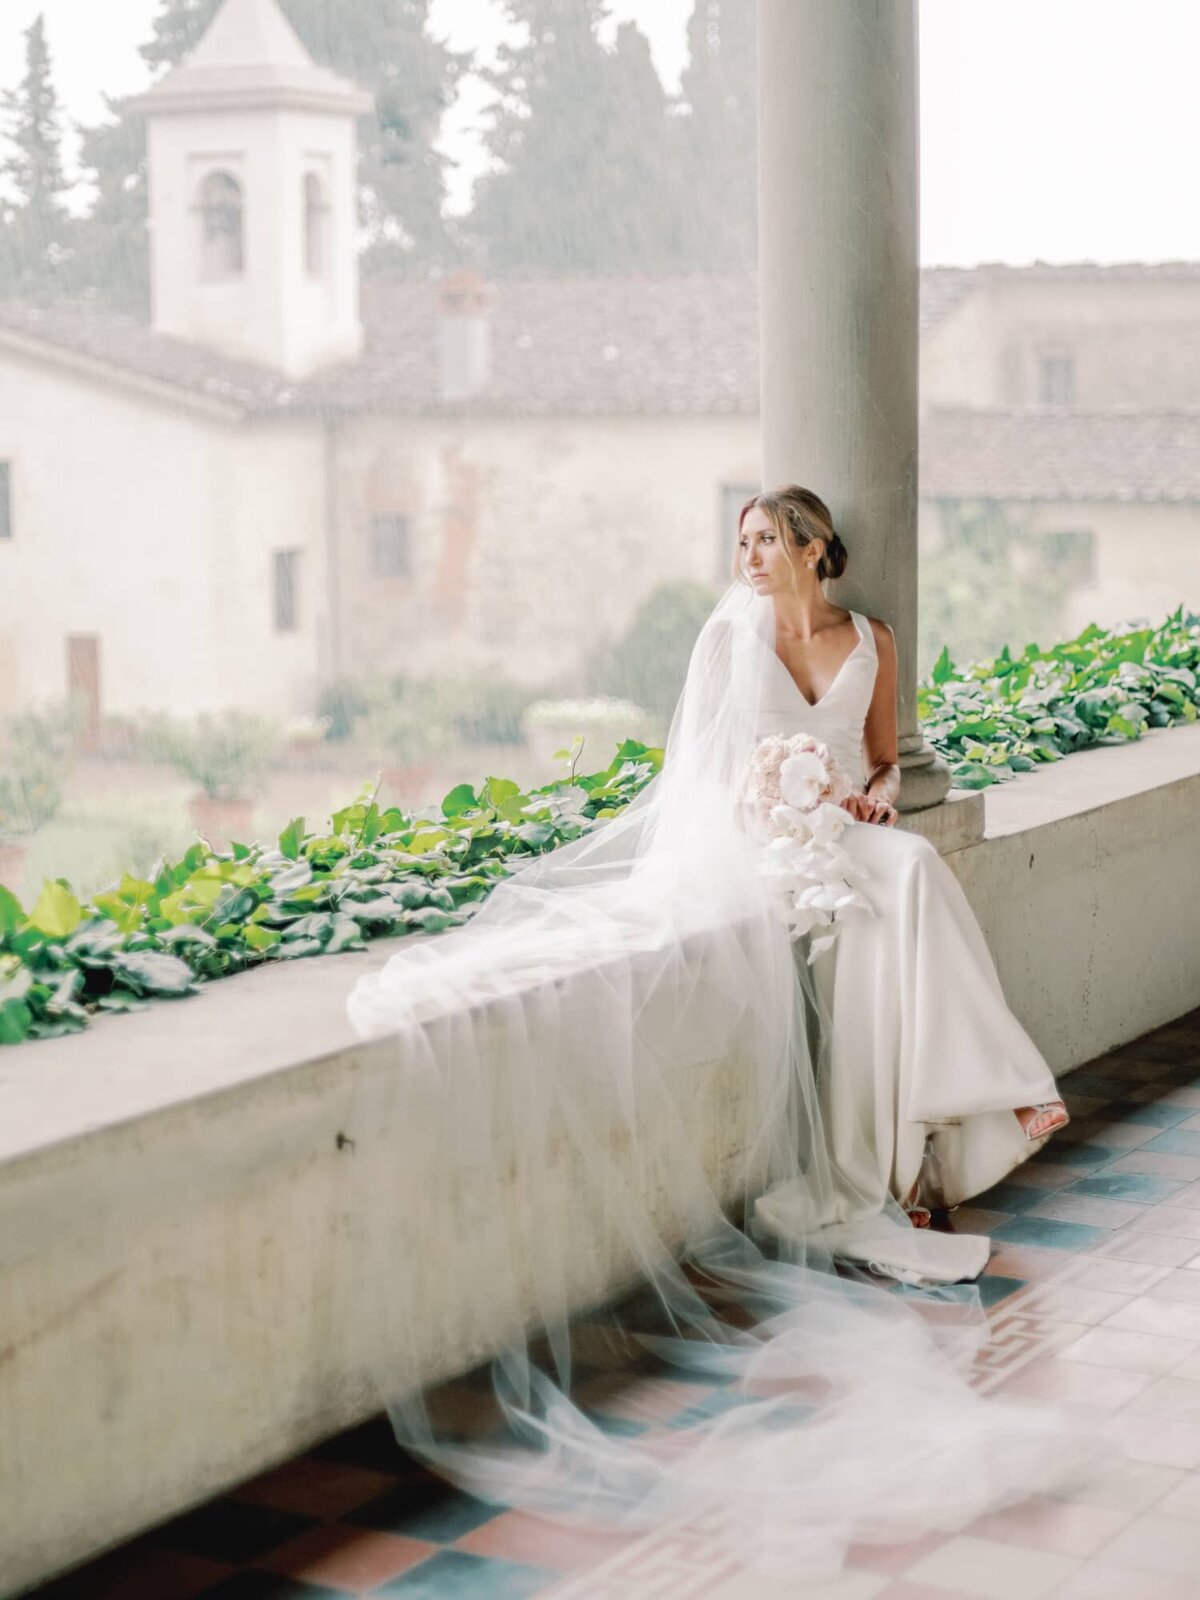 AndreasKGeorgiou-Tuscany-wedding-Italy-60